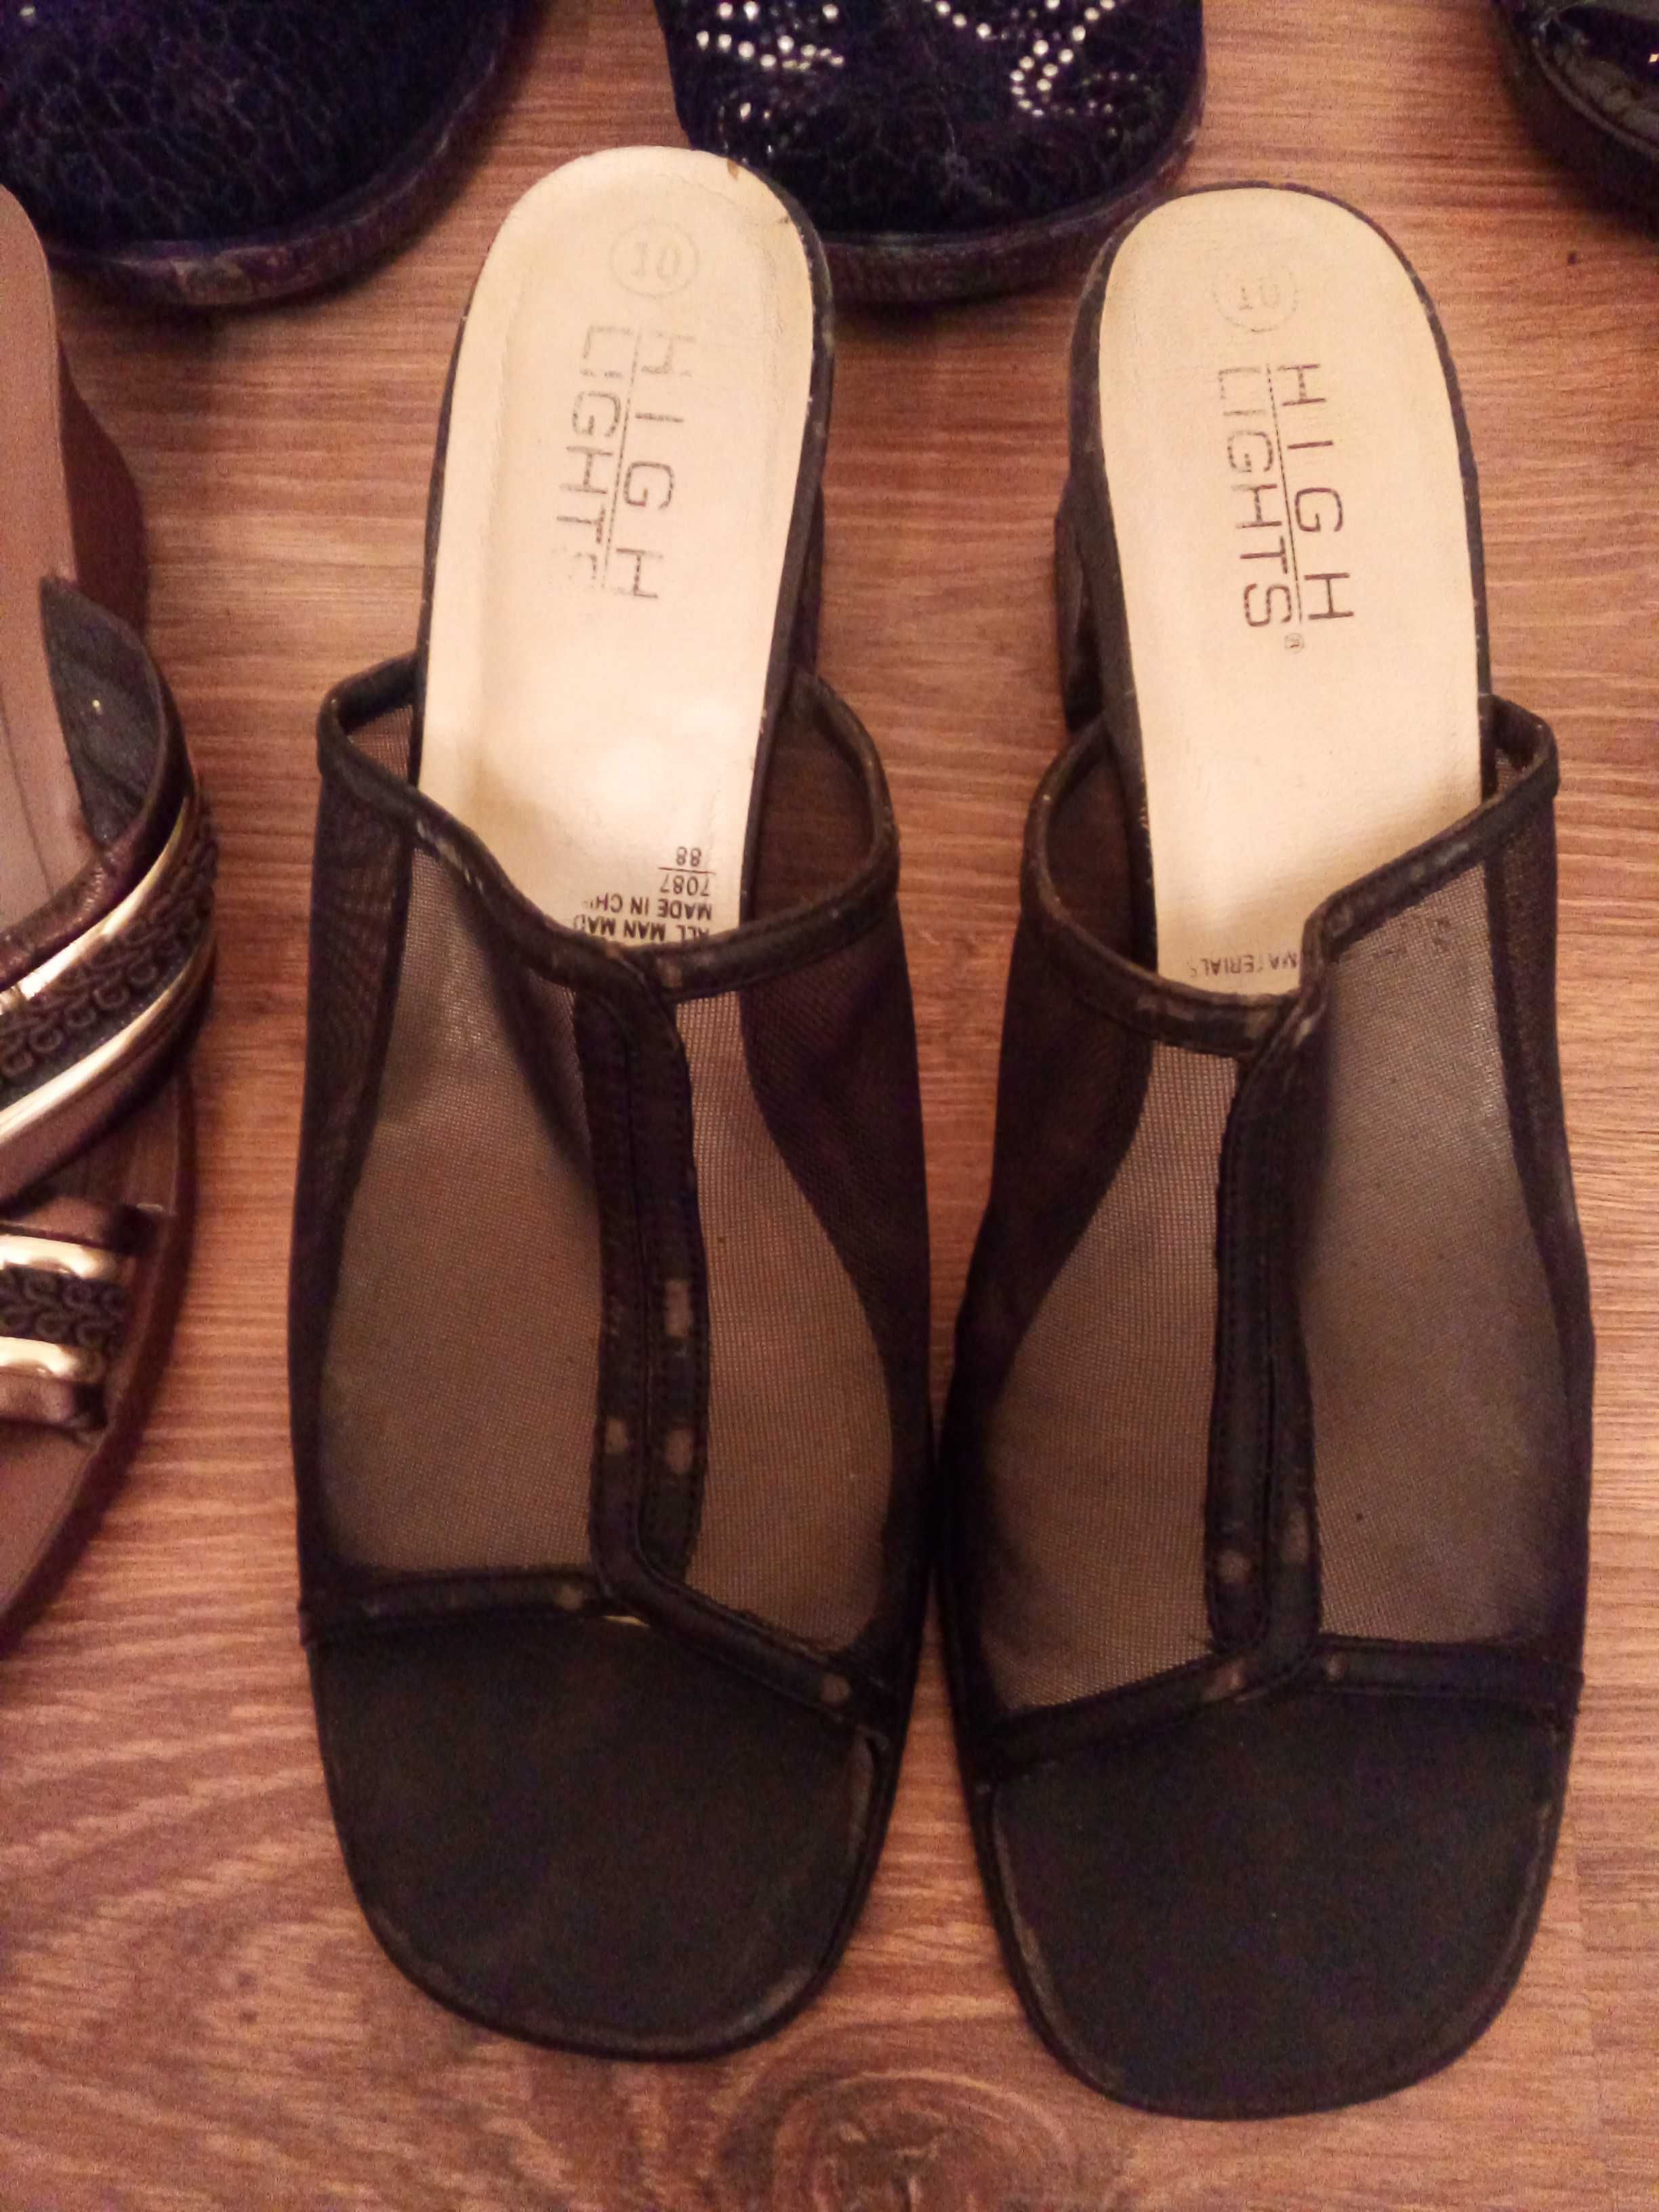 «Недорого» Женская обувь Б/У, размер 40-41.Цена 25 тысяч за пару